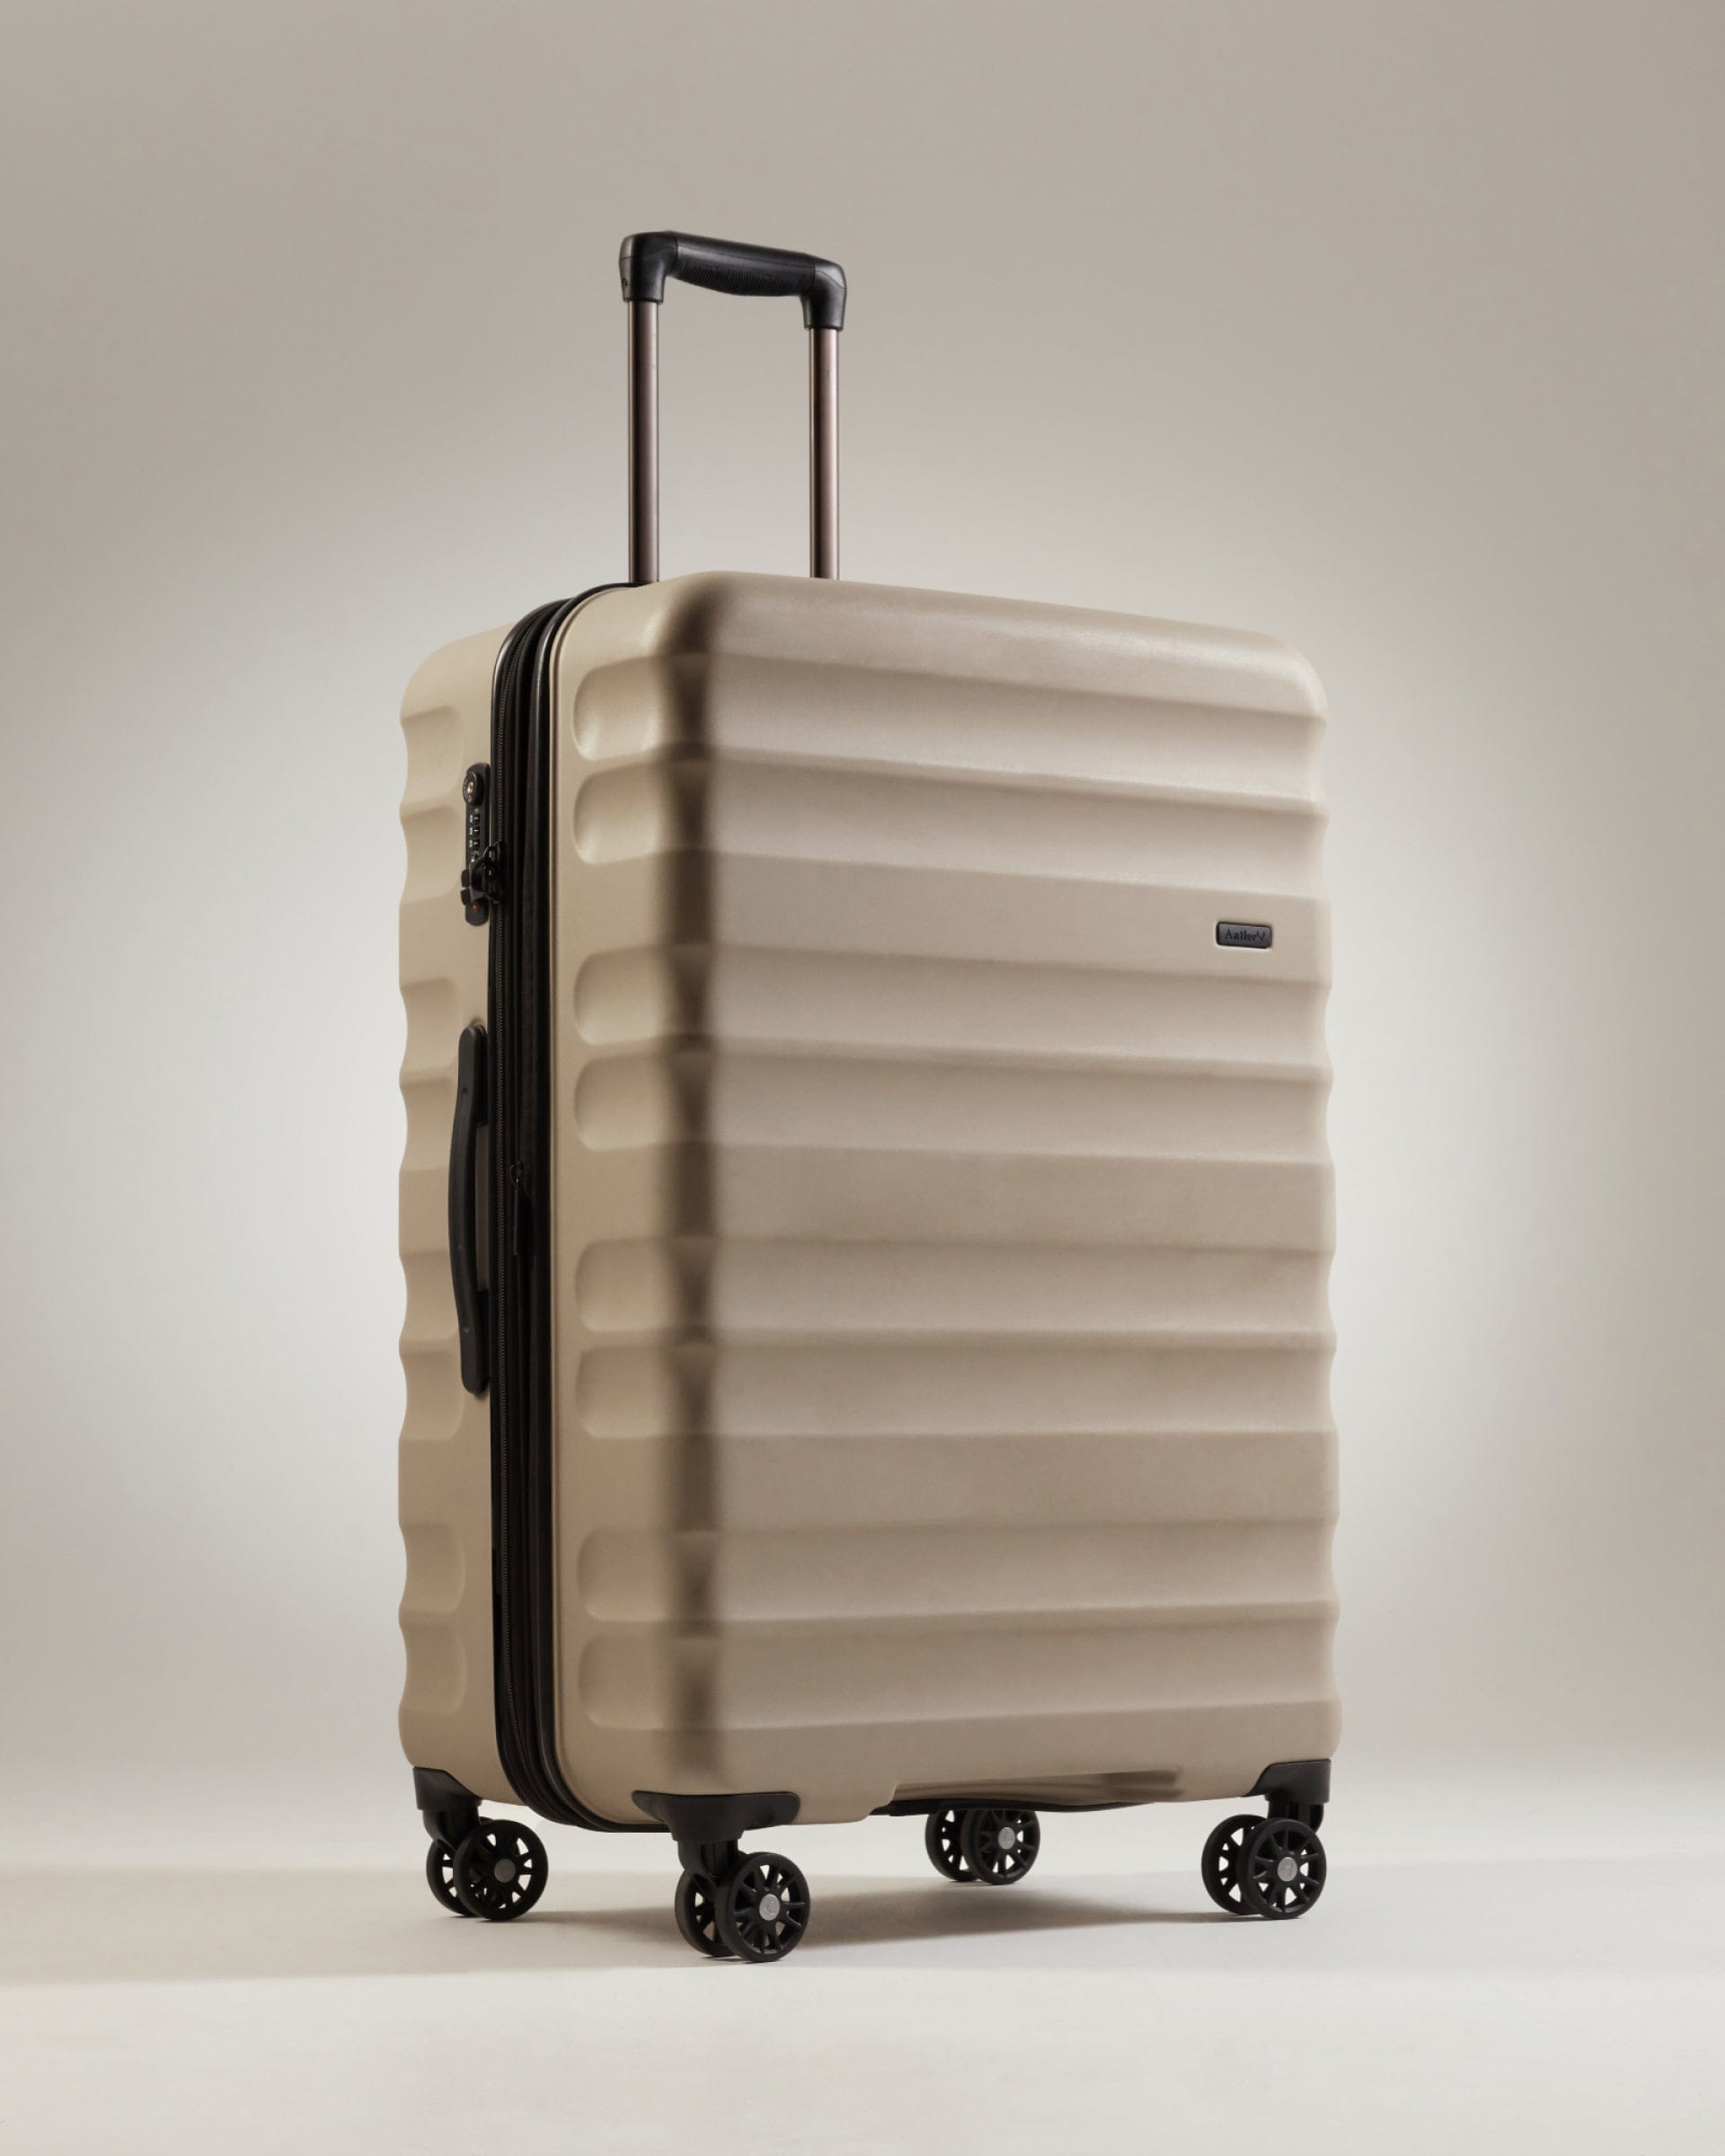 Antler Luggage -  Clifton large in oak brown - Hard Suitcases Clifton Large Suitcase Oak Brown | Hard Suitcase | Antler UK